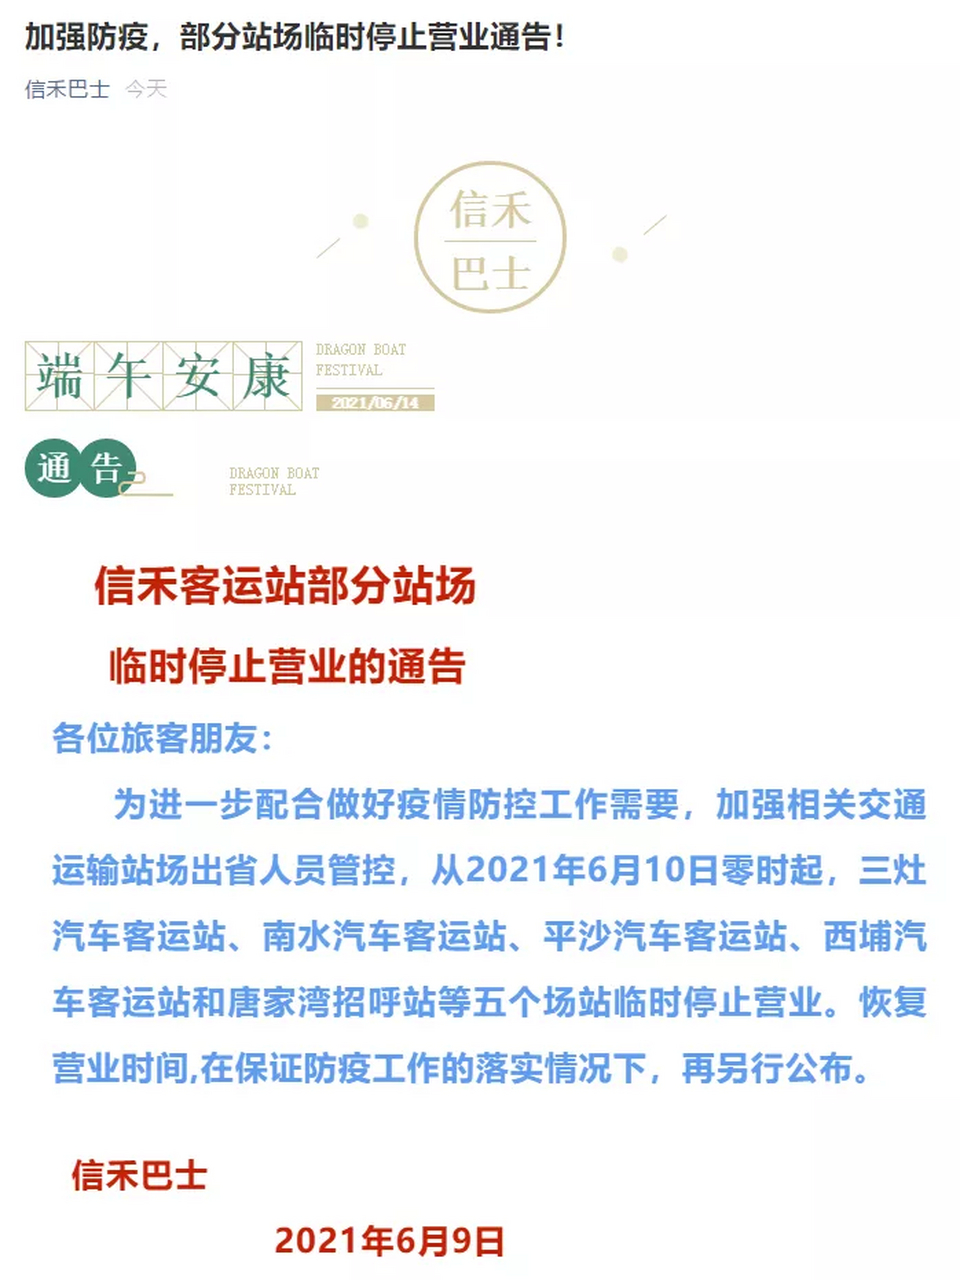 珠海公交信禾长运股份有限公司发布最新通告